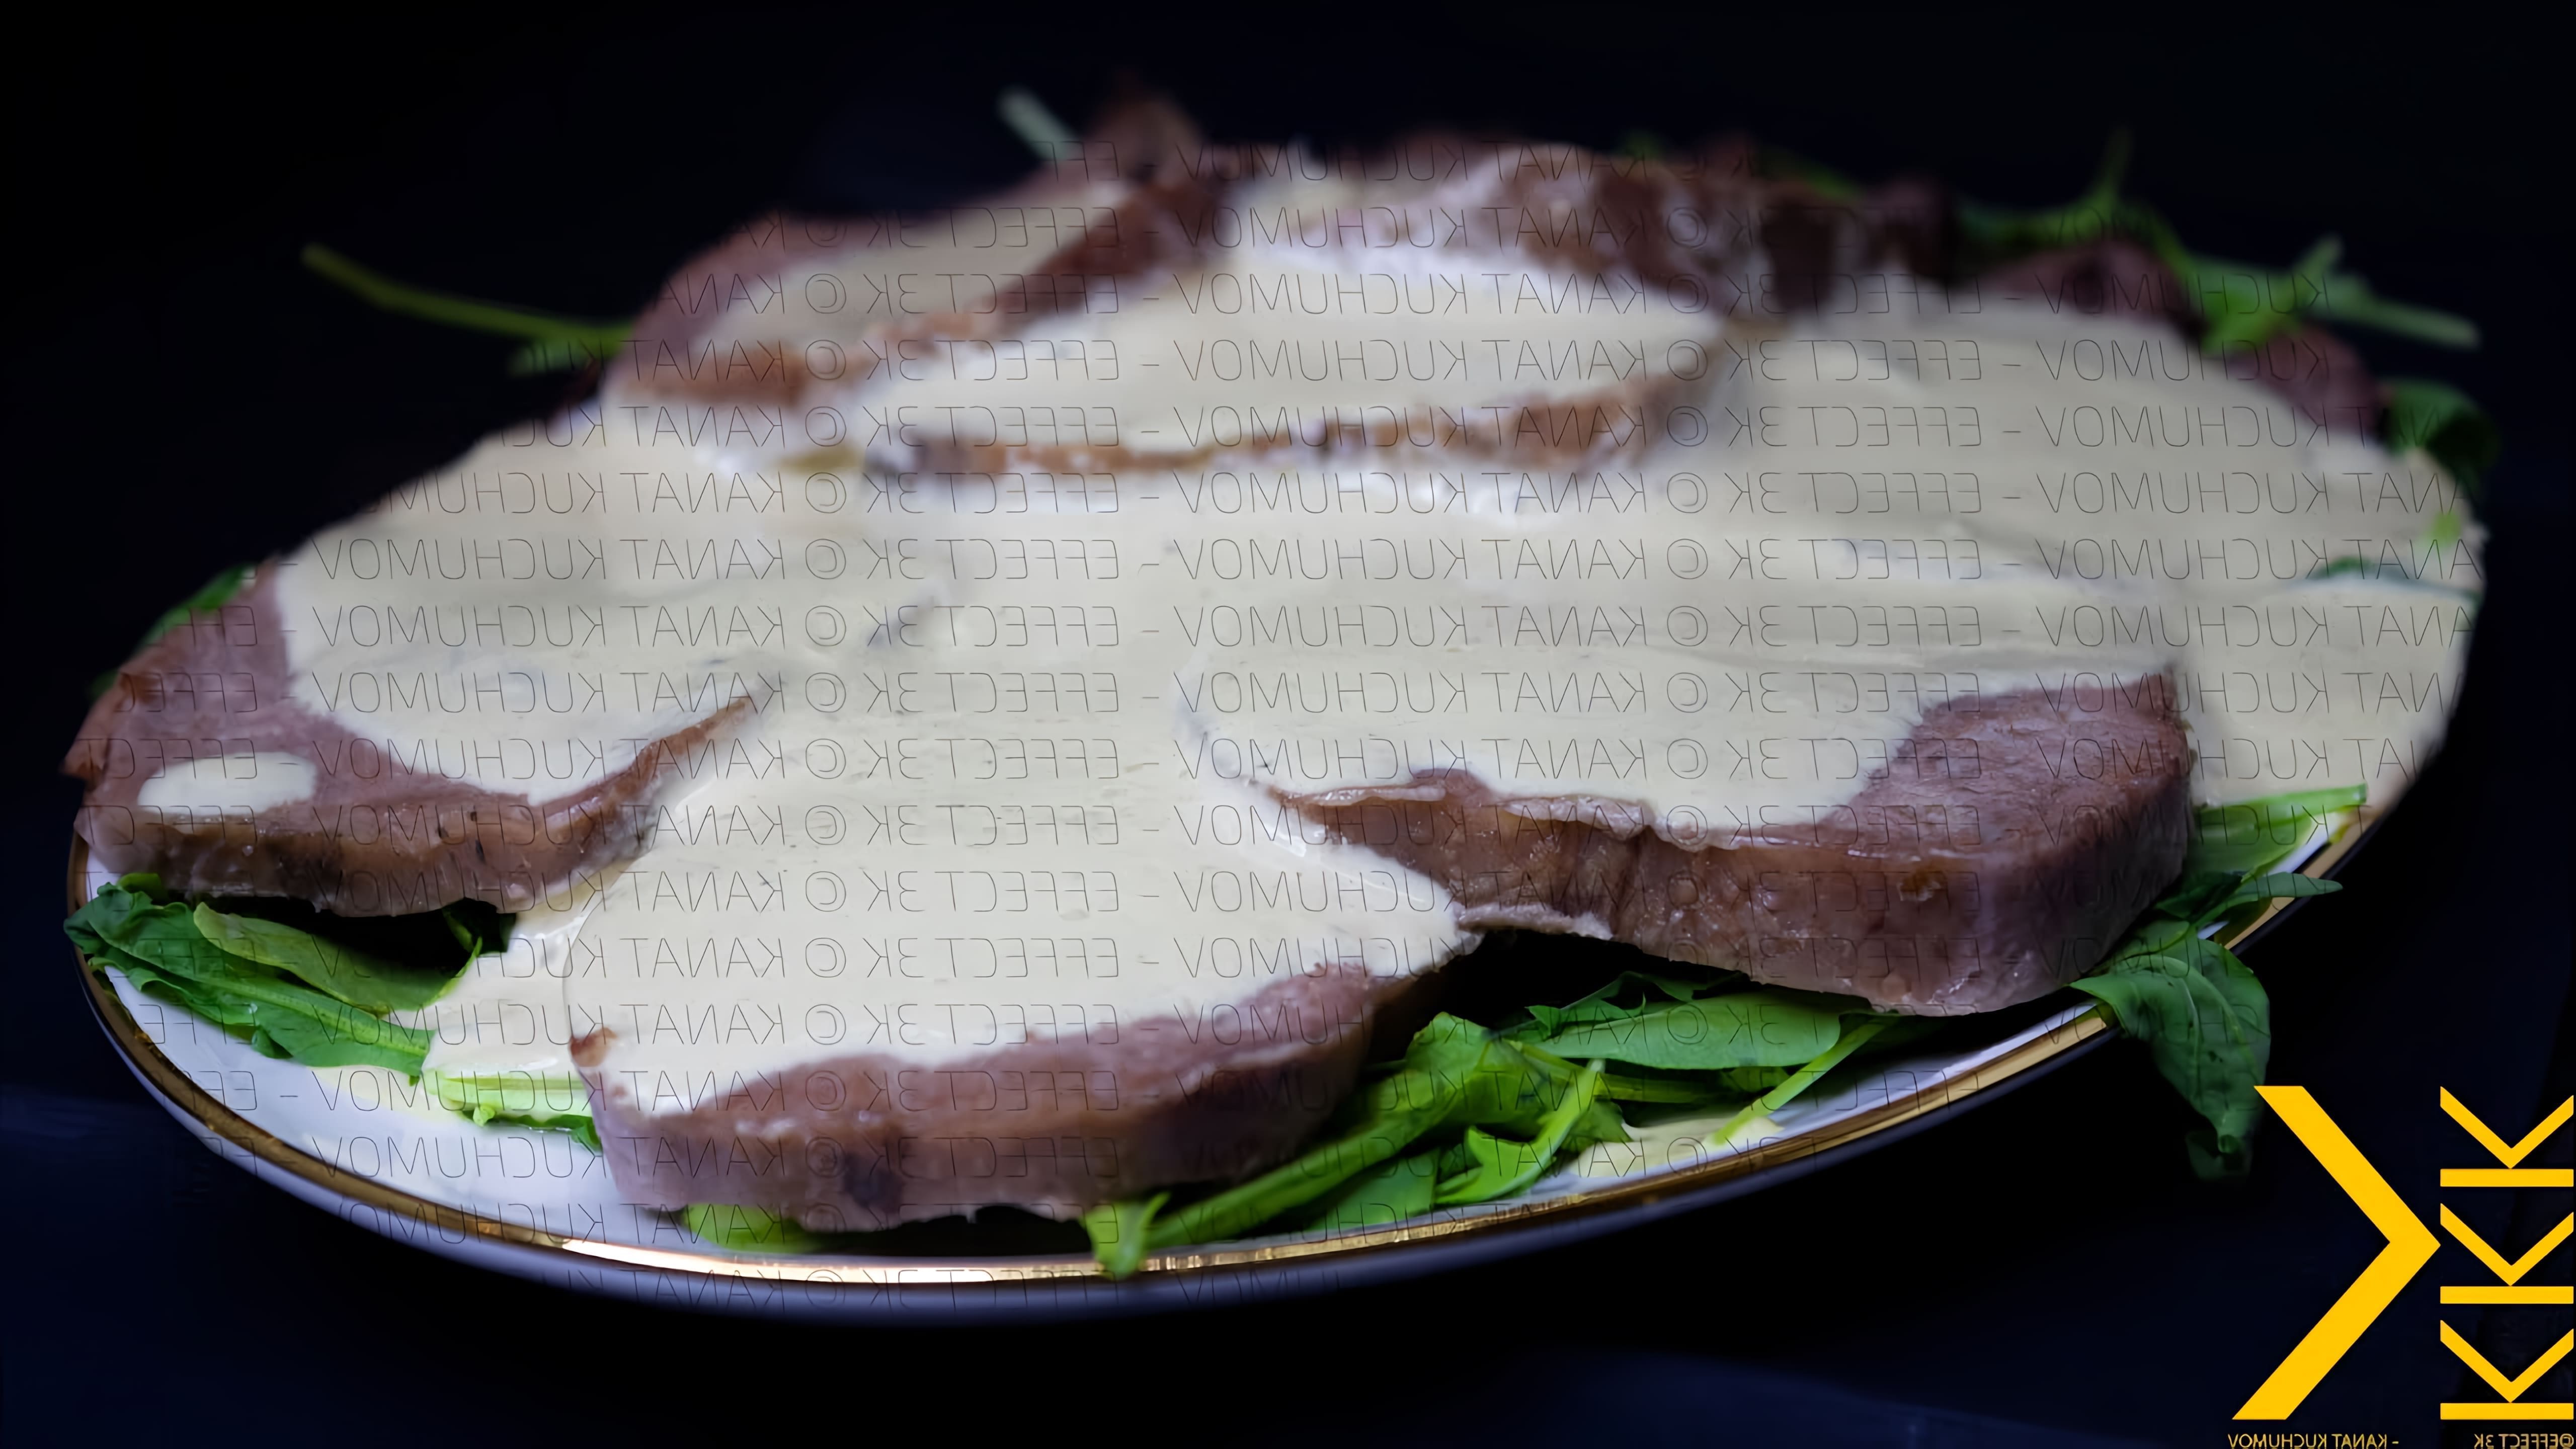 Рецепт: вителло тоннато

Вителло тоннато - это итальянское блюдо, которое готовится из тонко нарезанной говядины, покрытой соусом из тунца